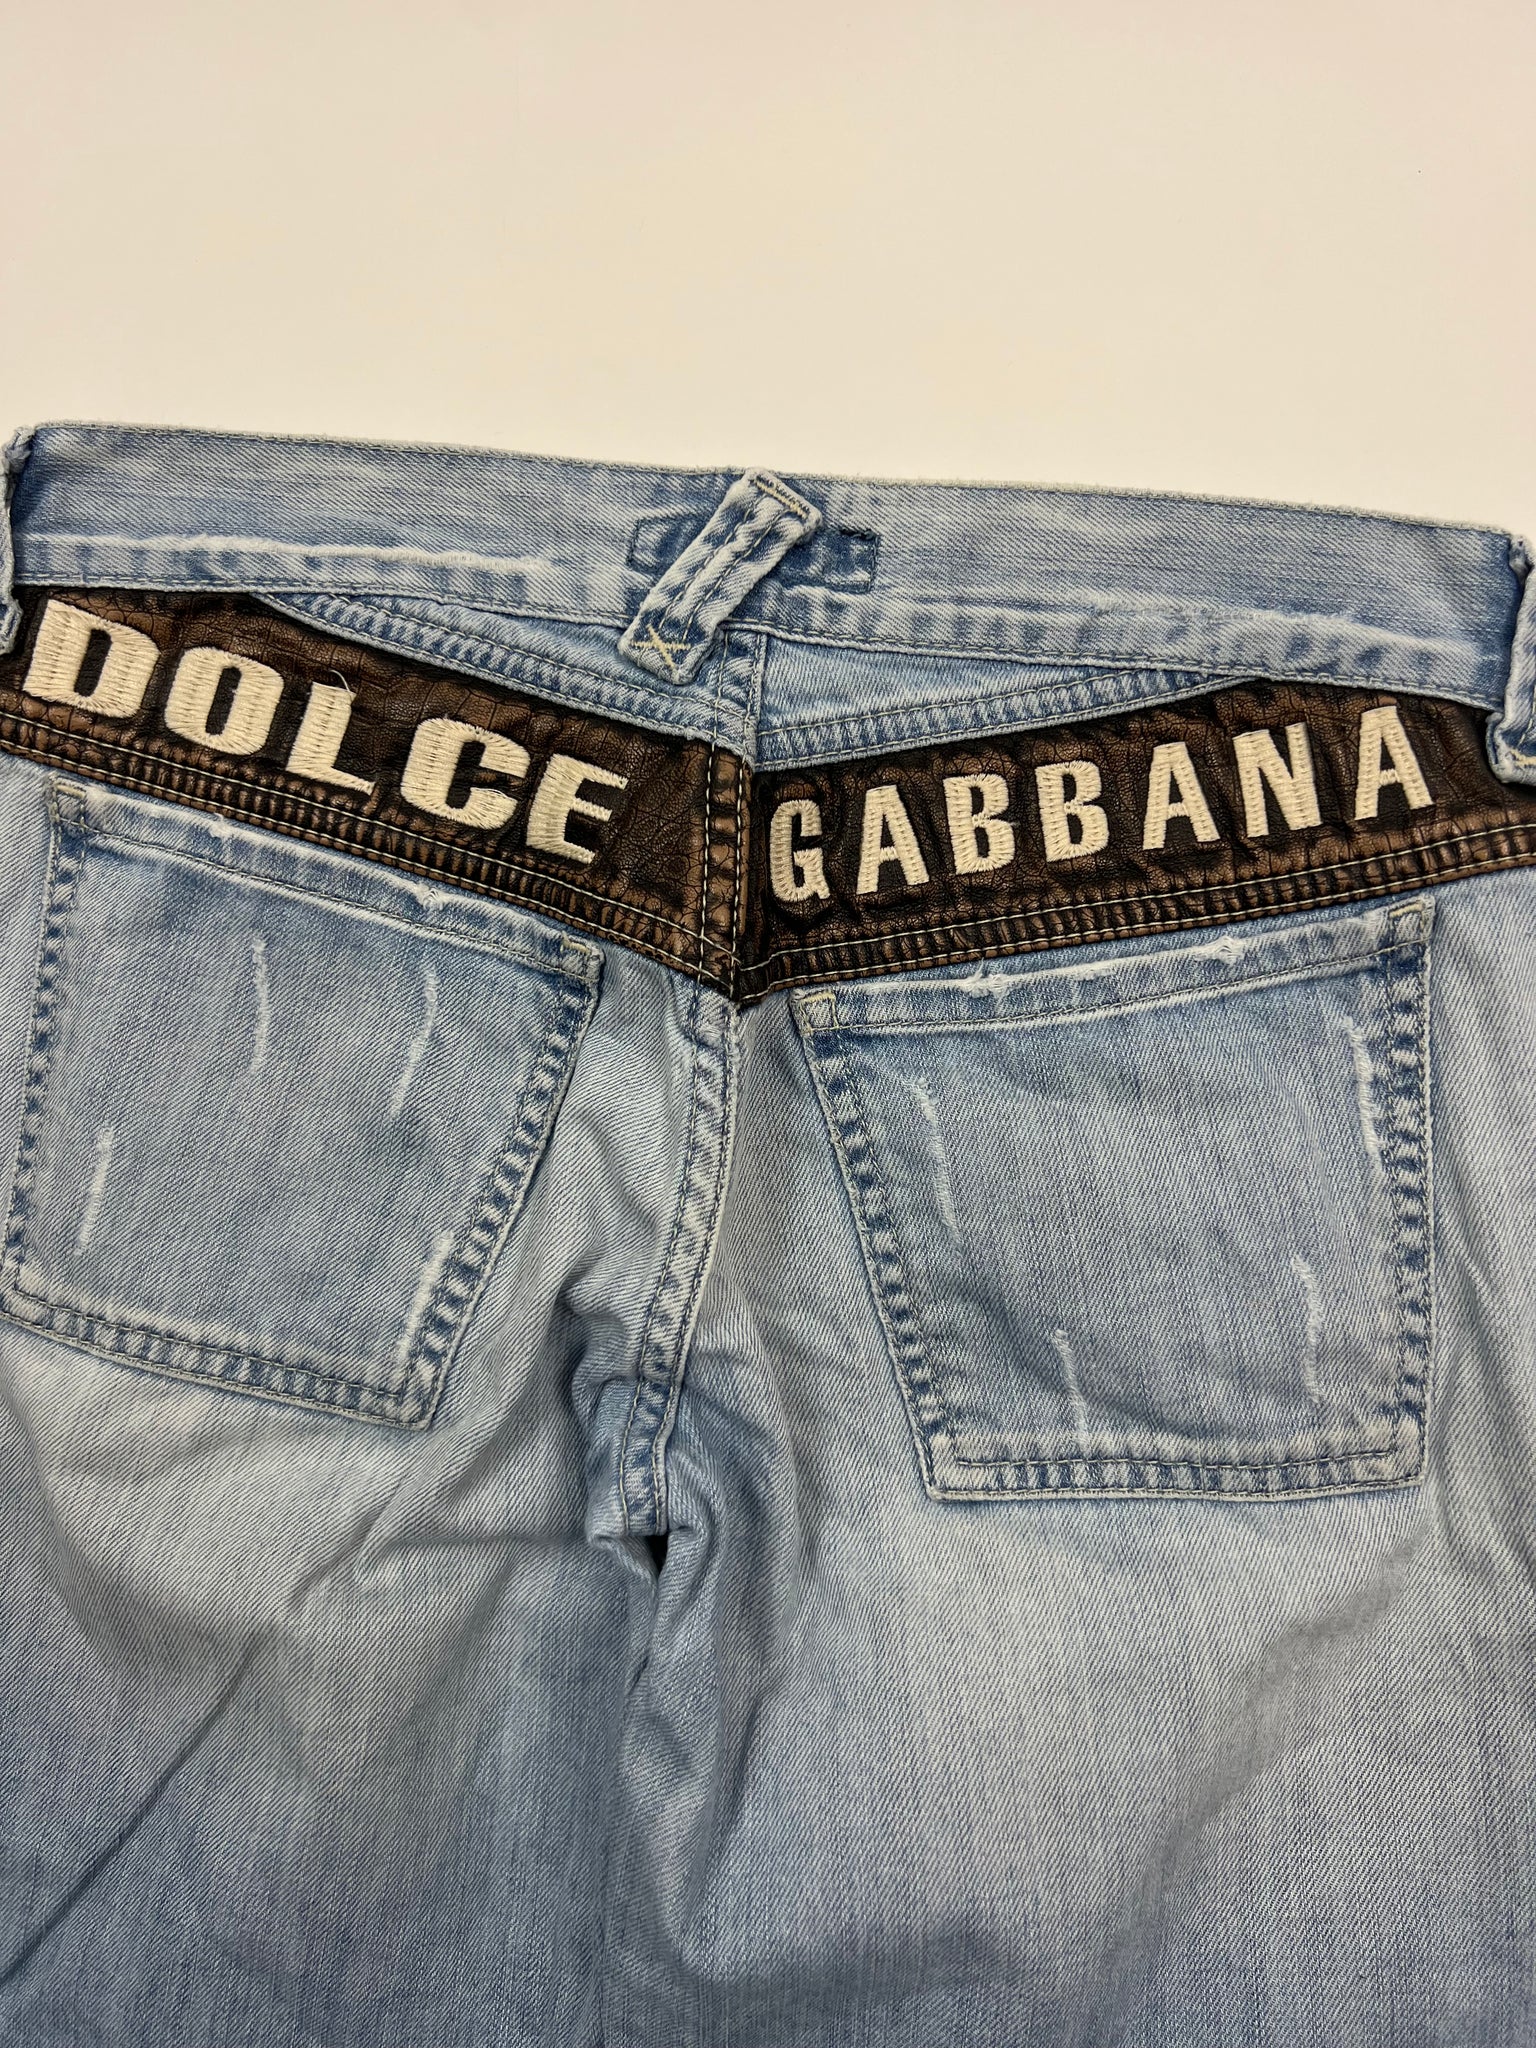 Dolce & Gabbana Jeans (28)